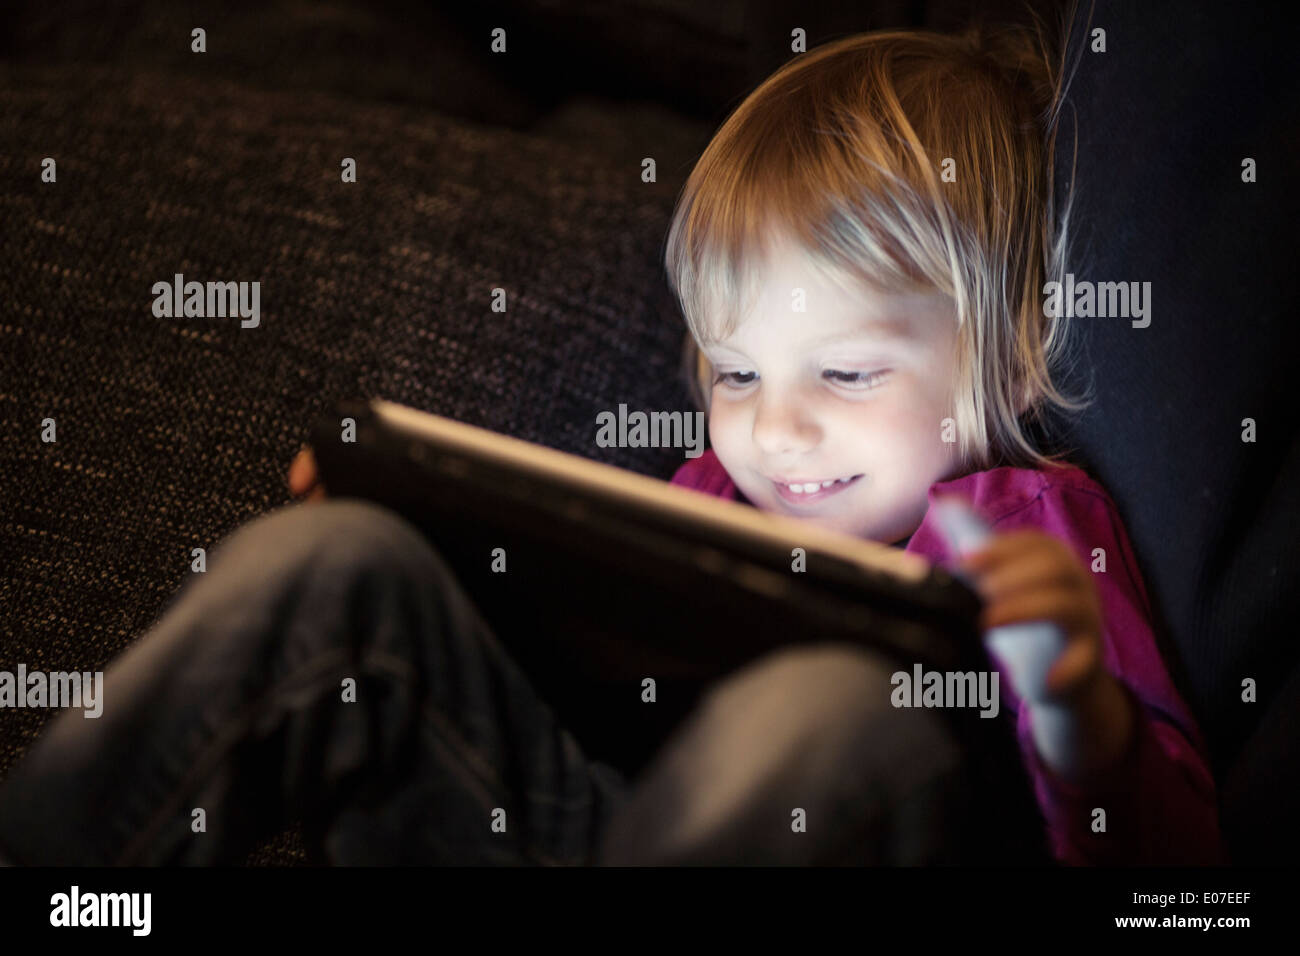 Blonde girl using digital tablet Banque D'Images